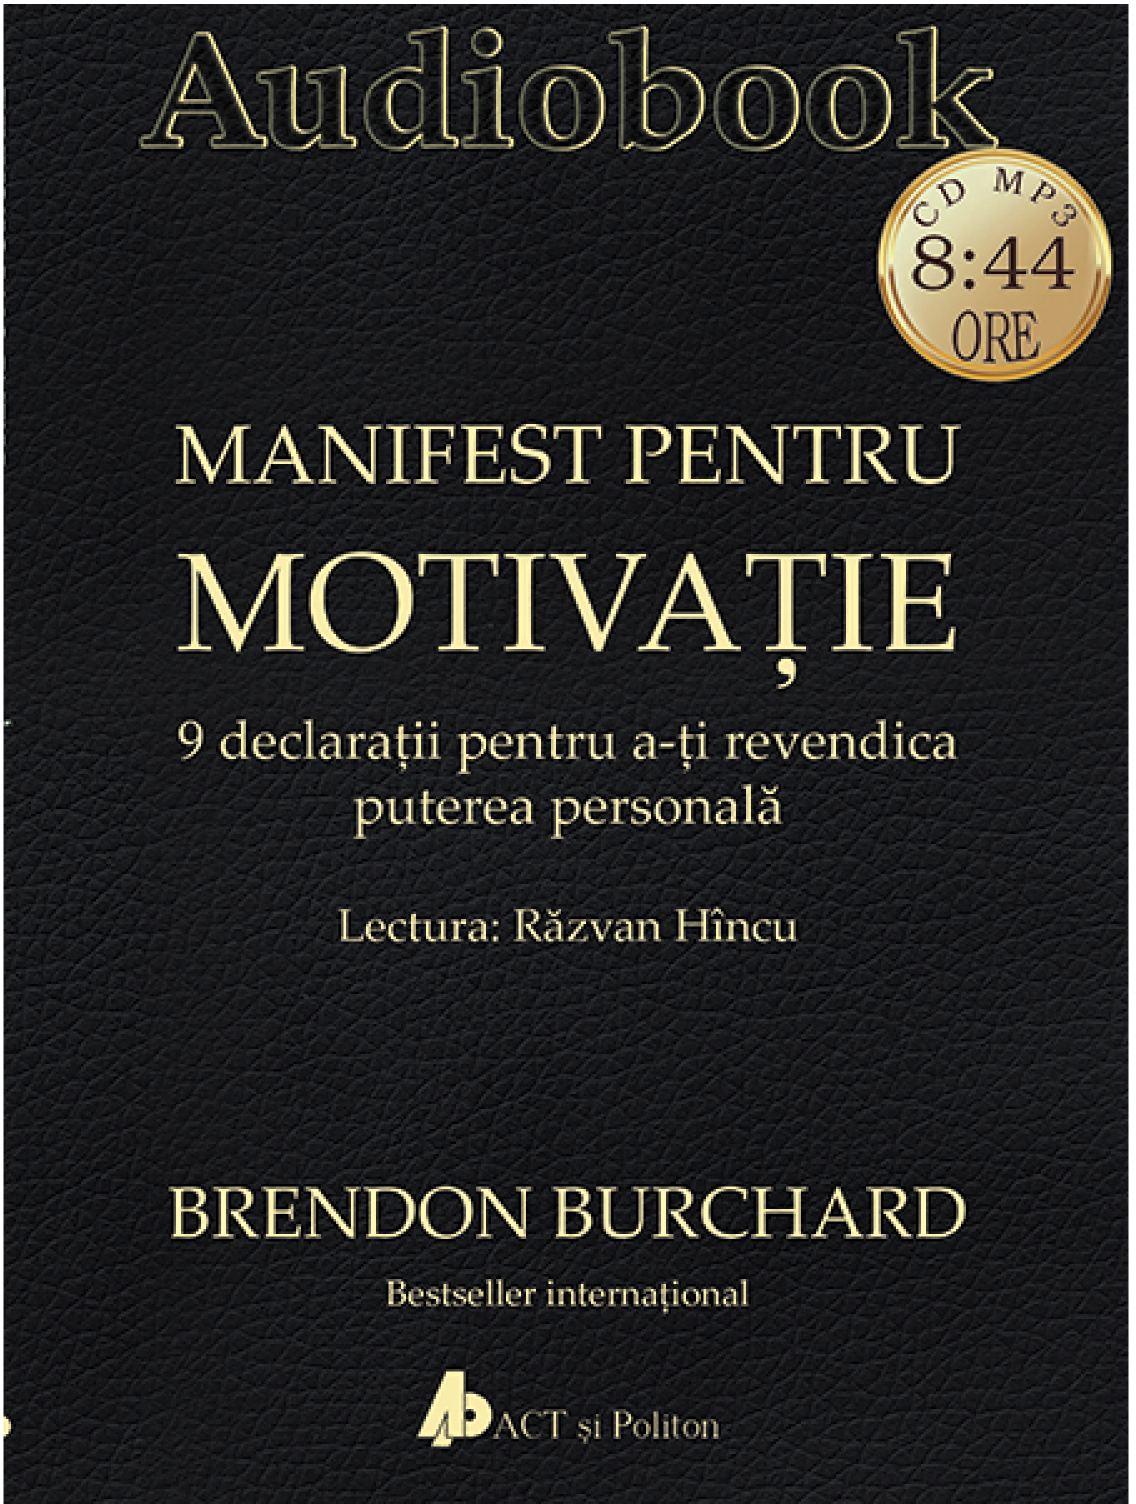 Manifest pentru motivatie | Brendon Burchard Audiobooks